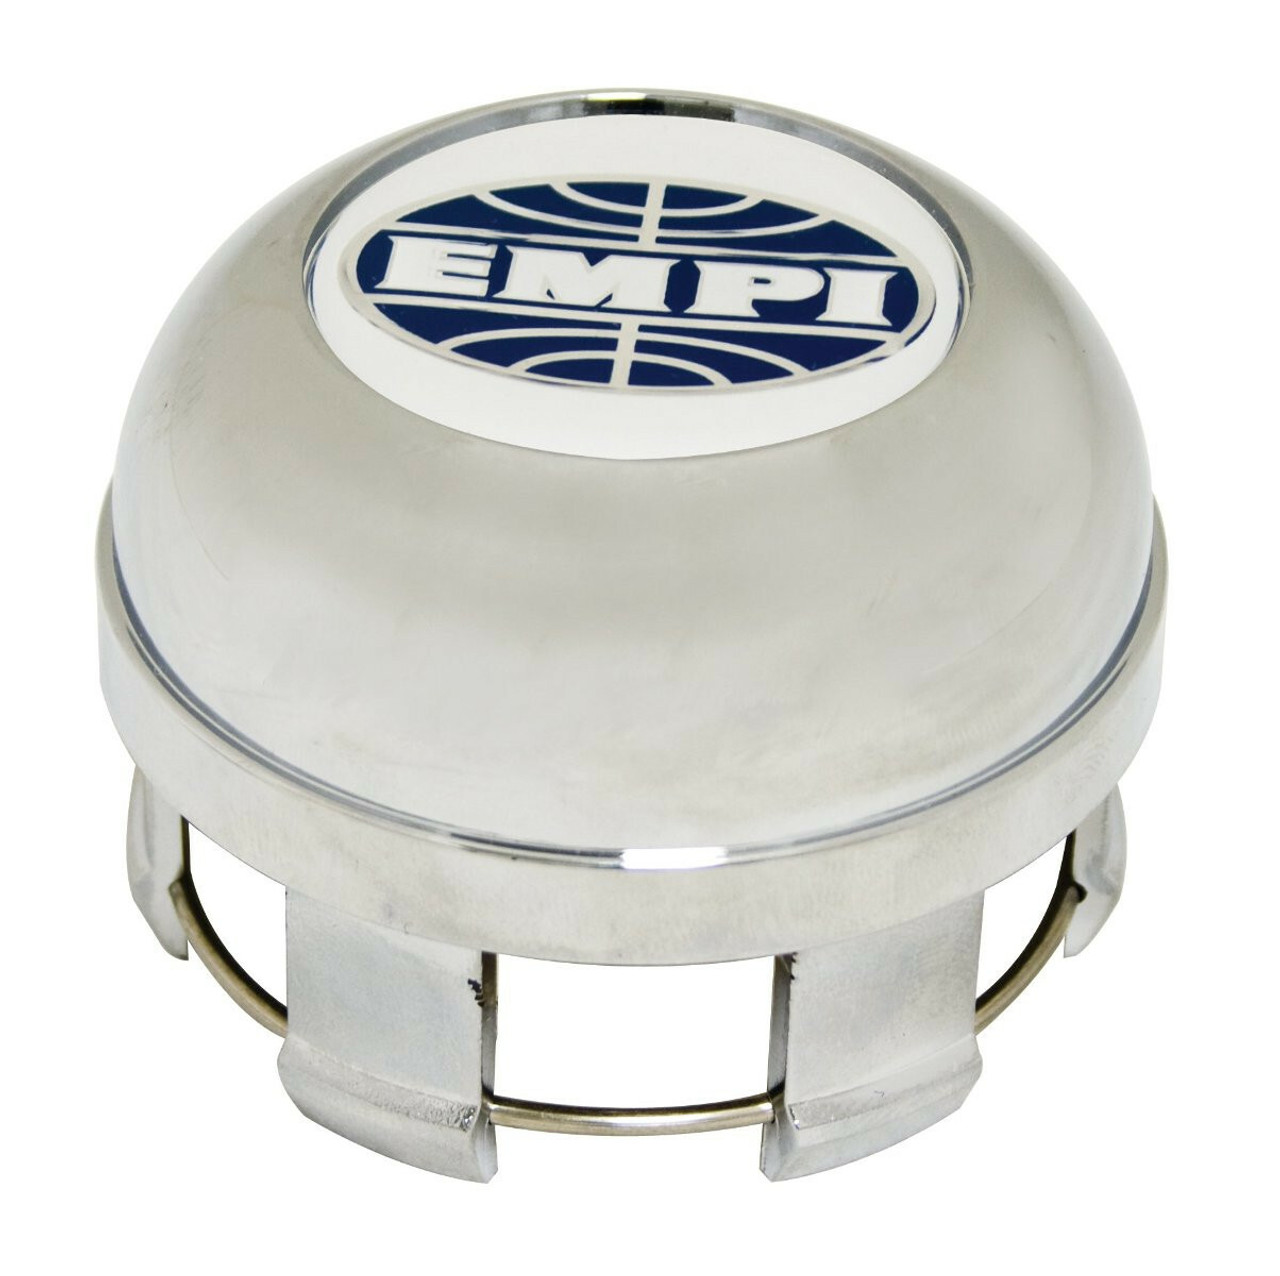 EMPI 10-1096-0 Cap Only with EMPI Logo, Chrome Plated Plastic